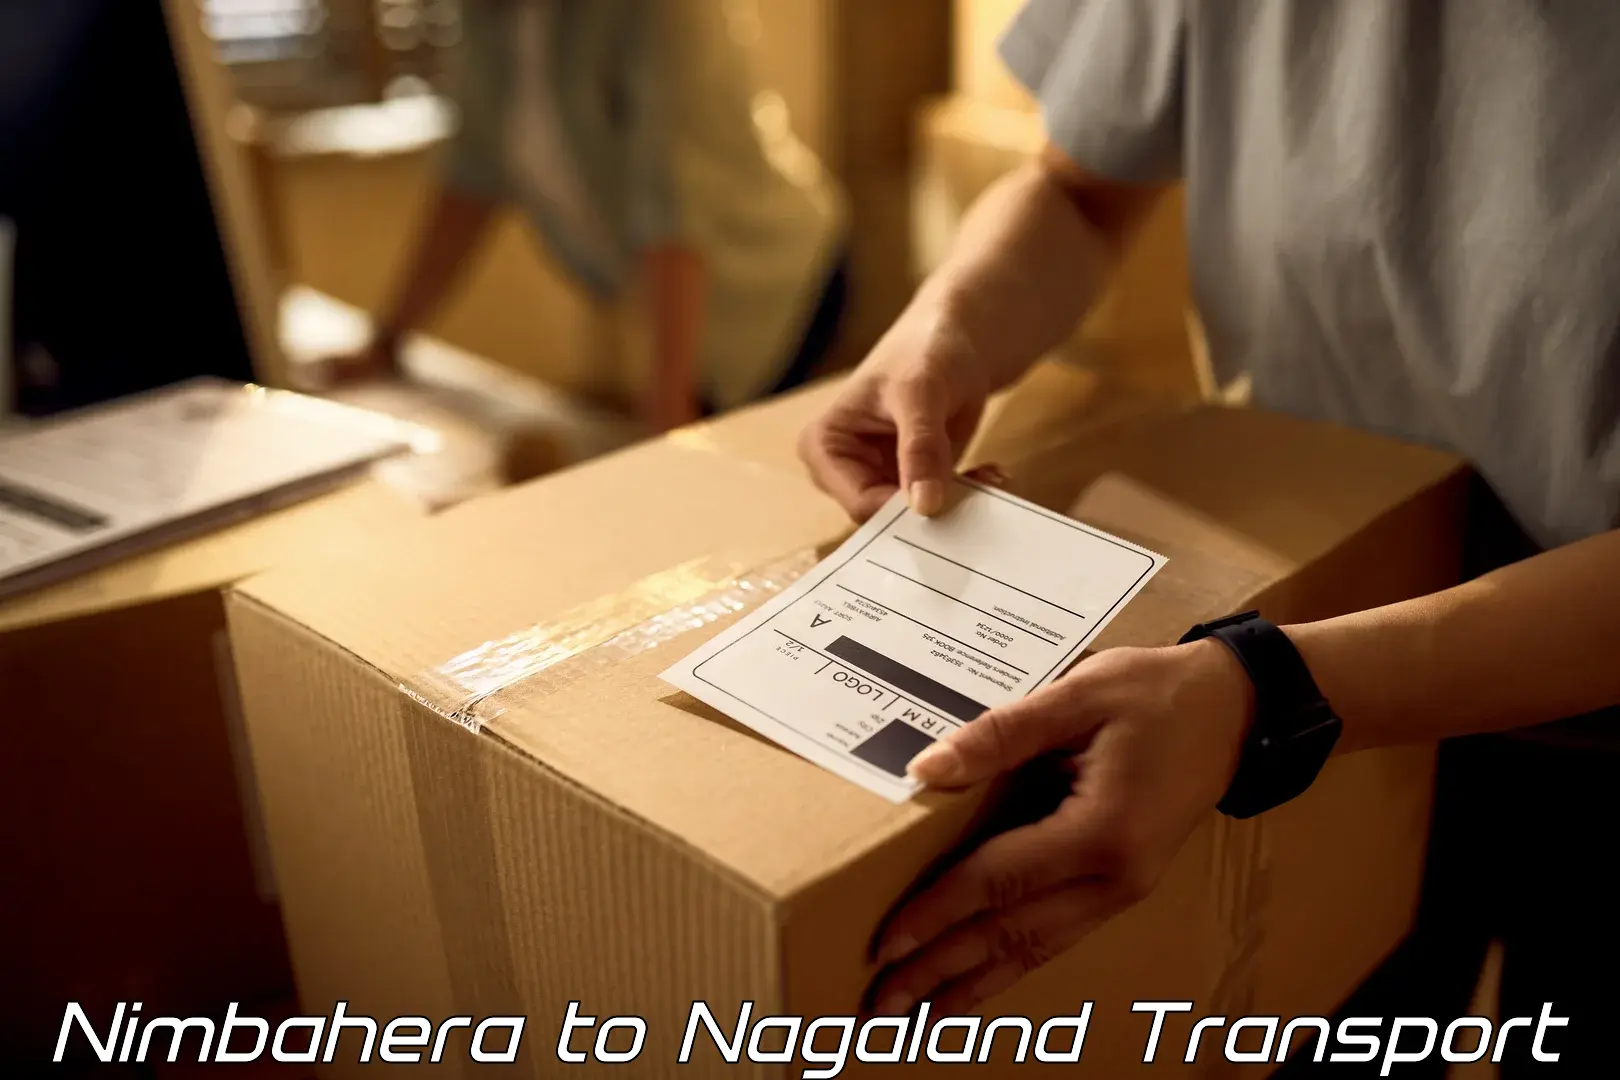 Furniture transport service Nimbahera to Nagaland